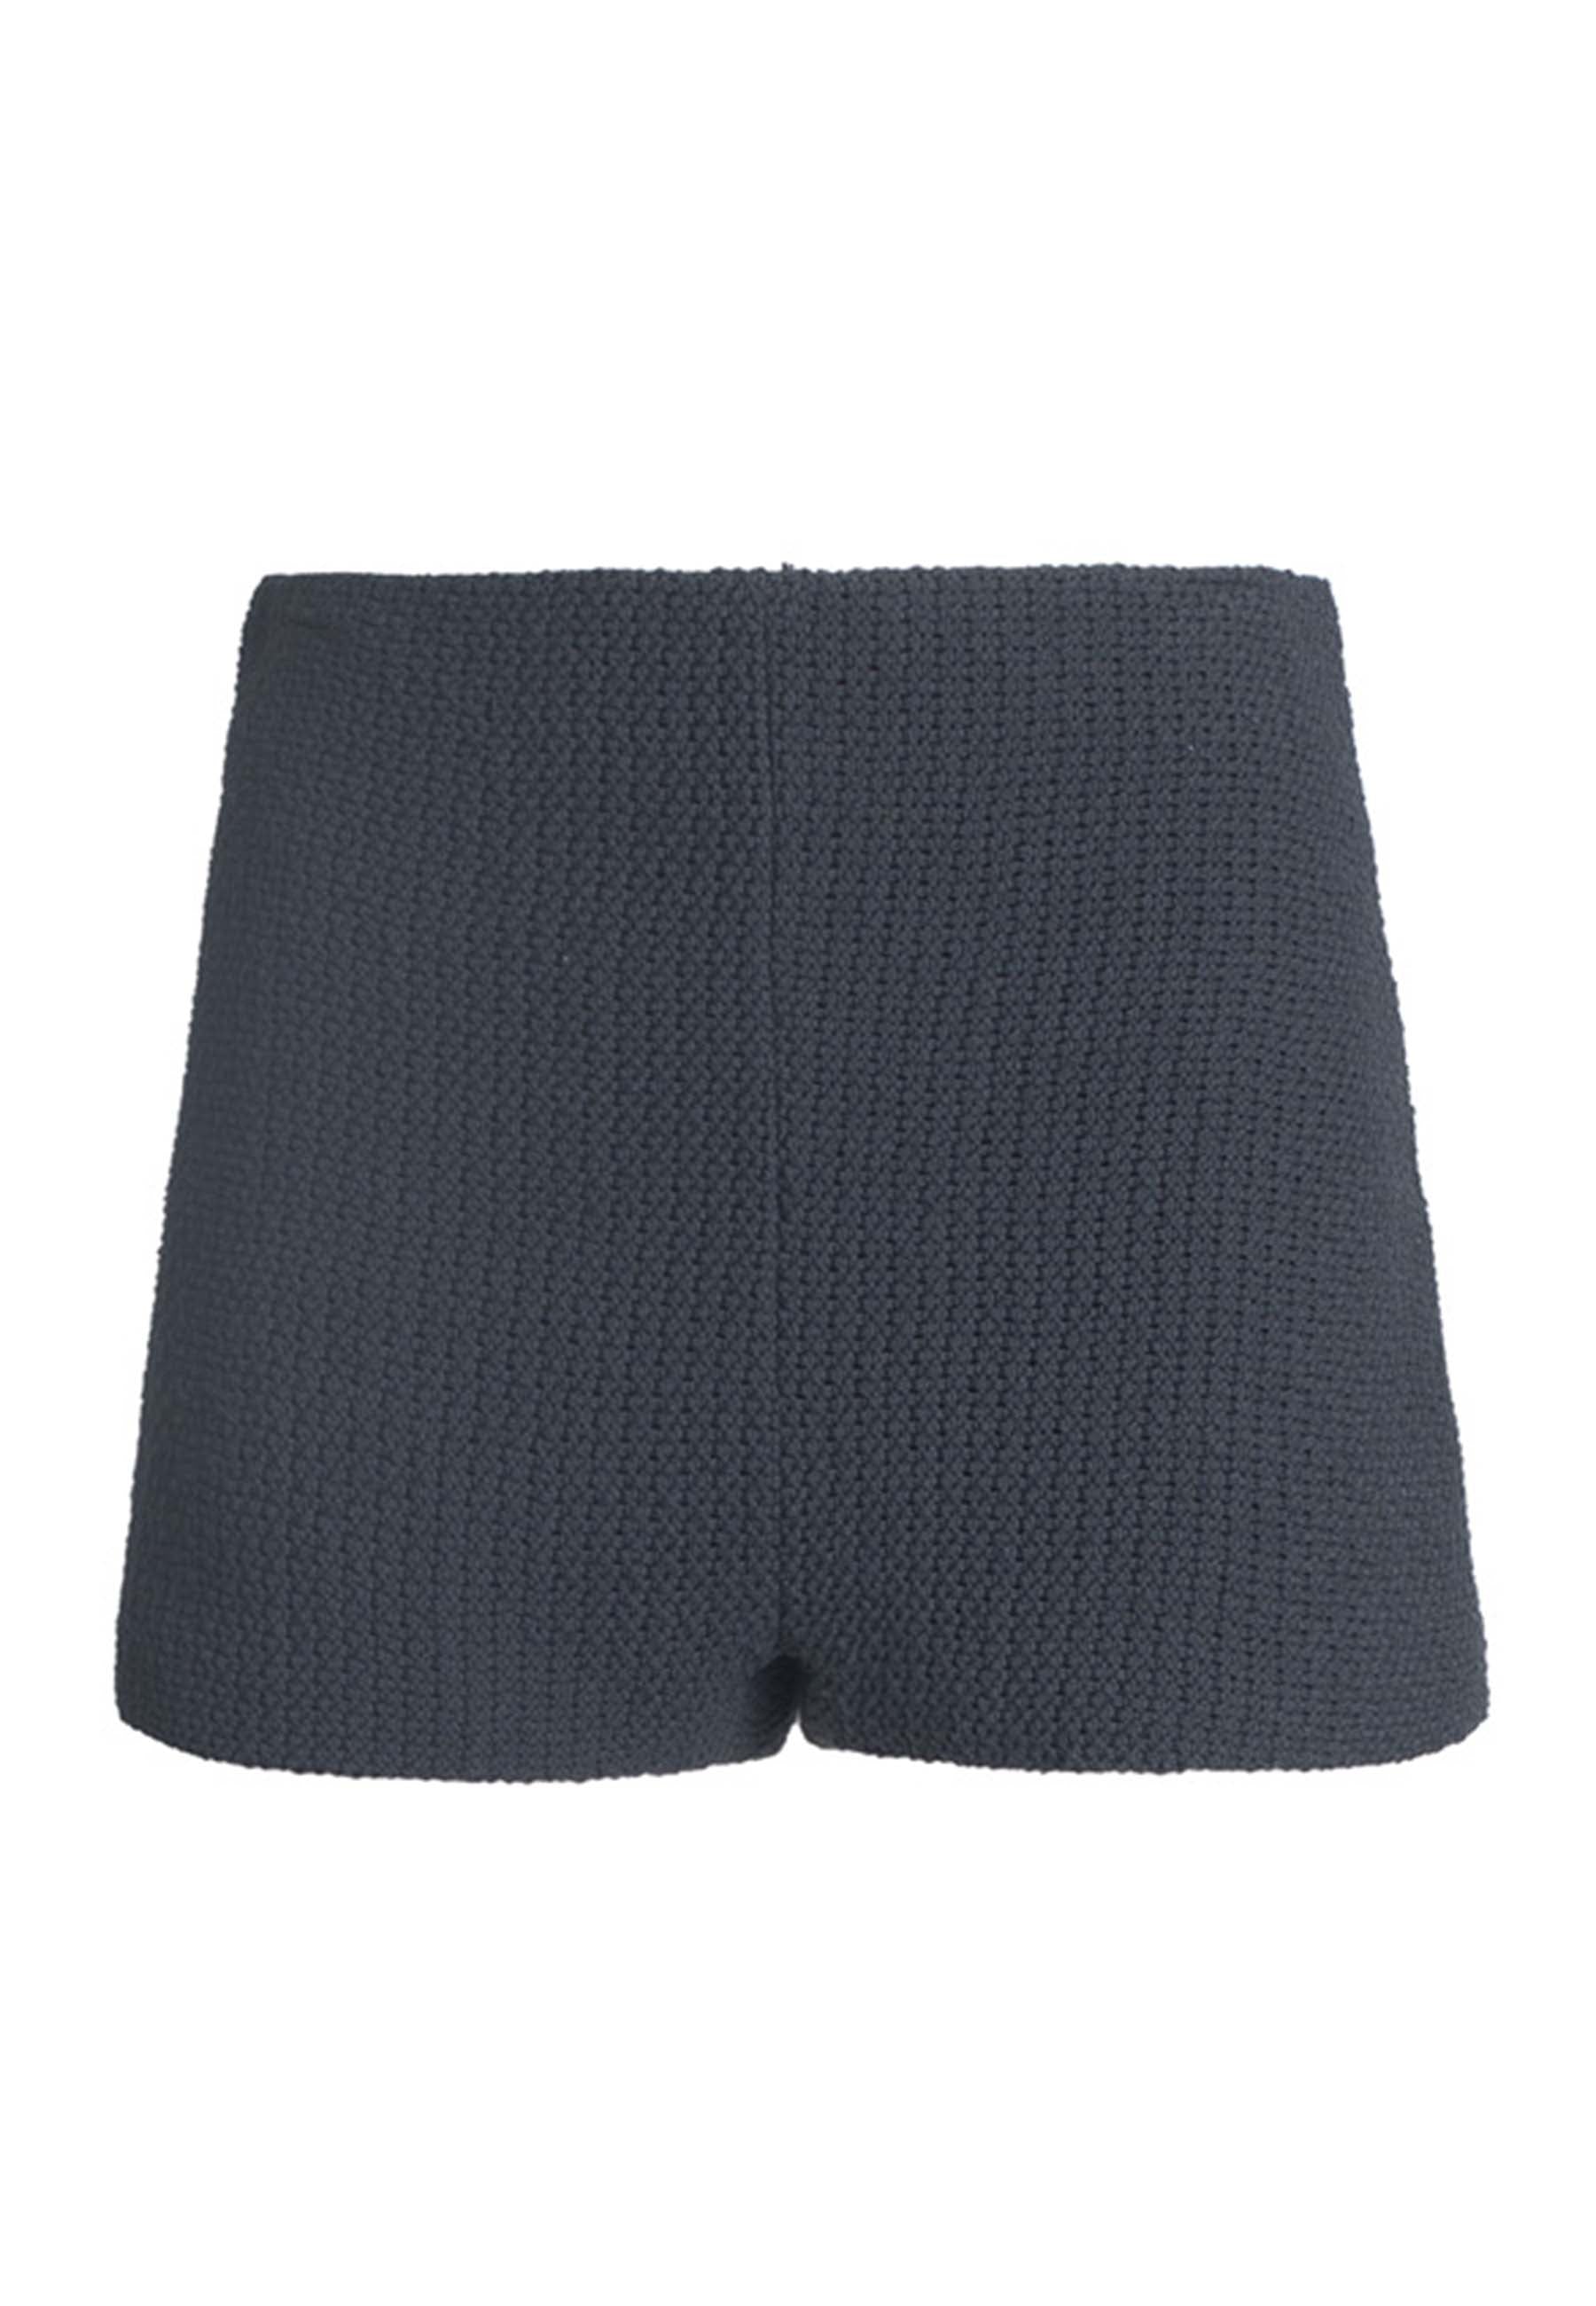 Short jupe-culotte pour femme en tissu stretch gris